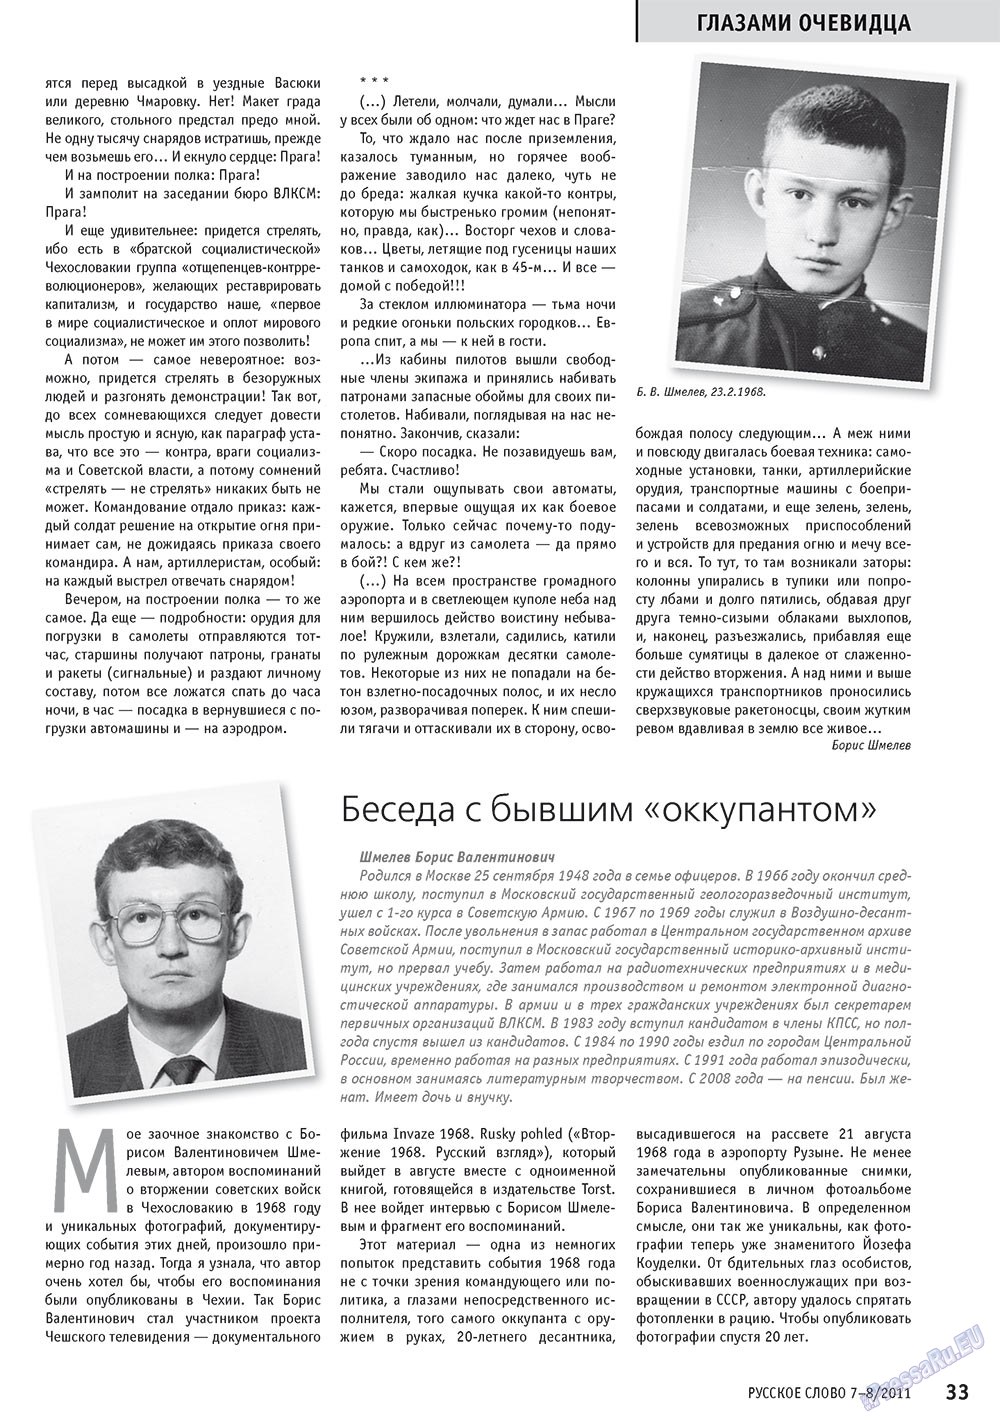 Русское слово, журнал. 2011 №7 стр.35